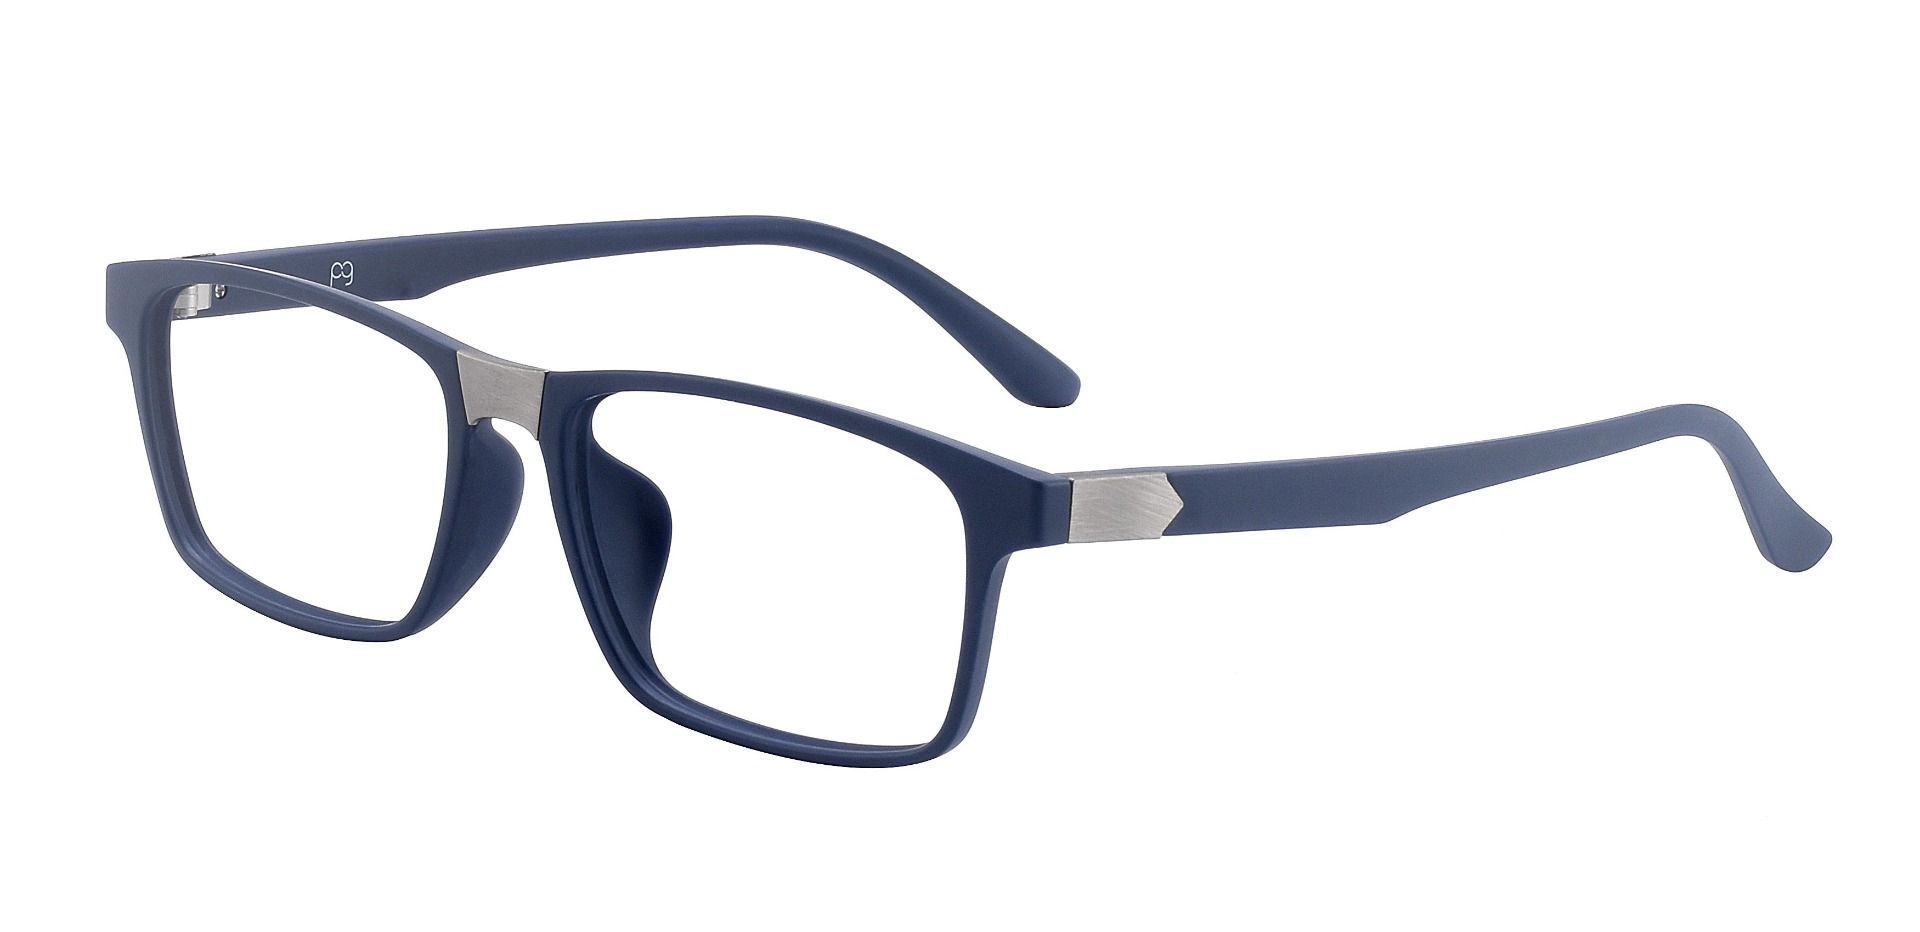 Polar Rectangle Prescription Glasses - Blue | Men's Eyeglasses | Payne ...